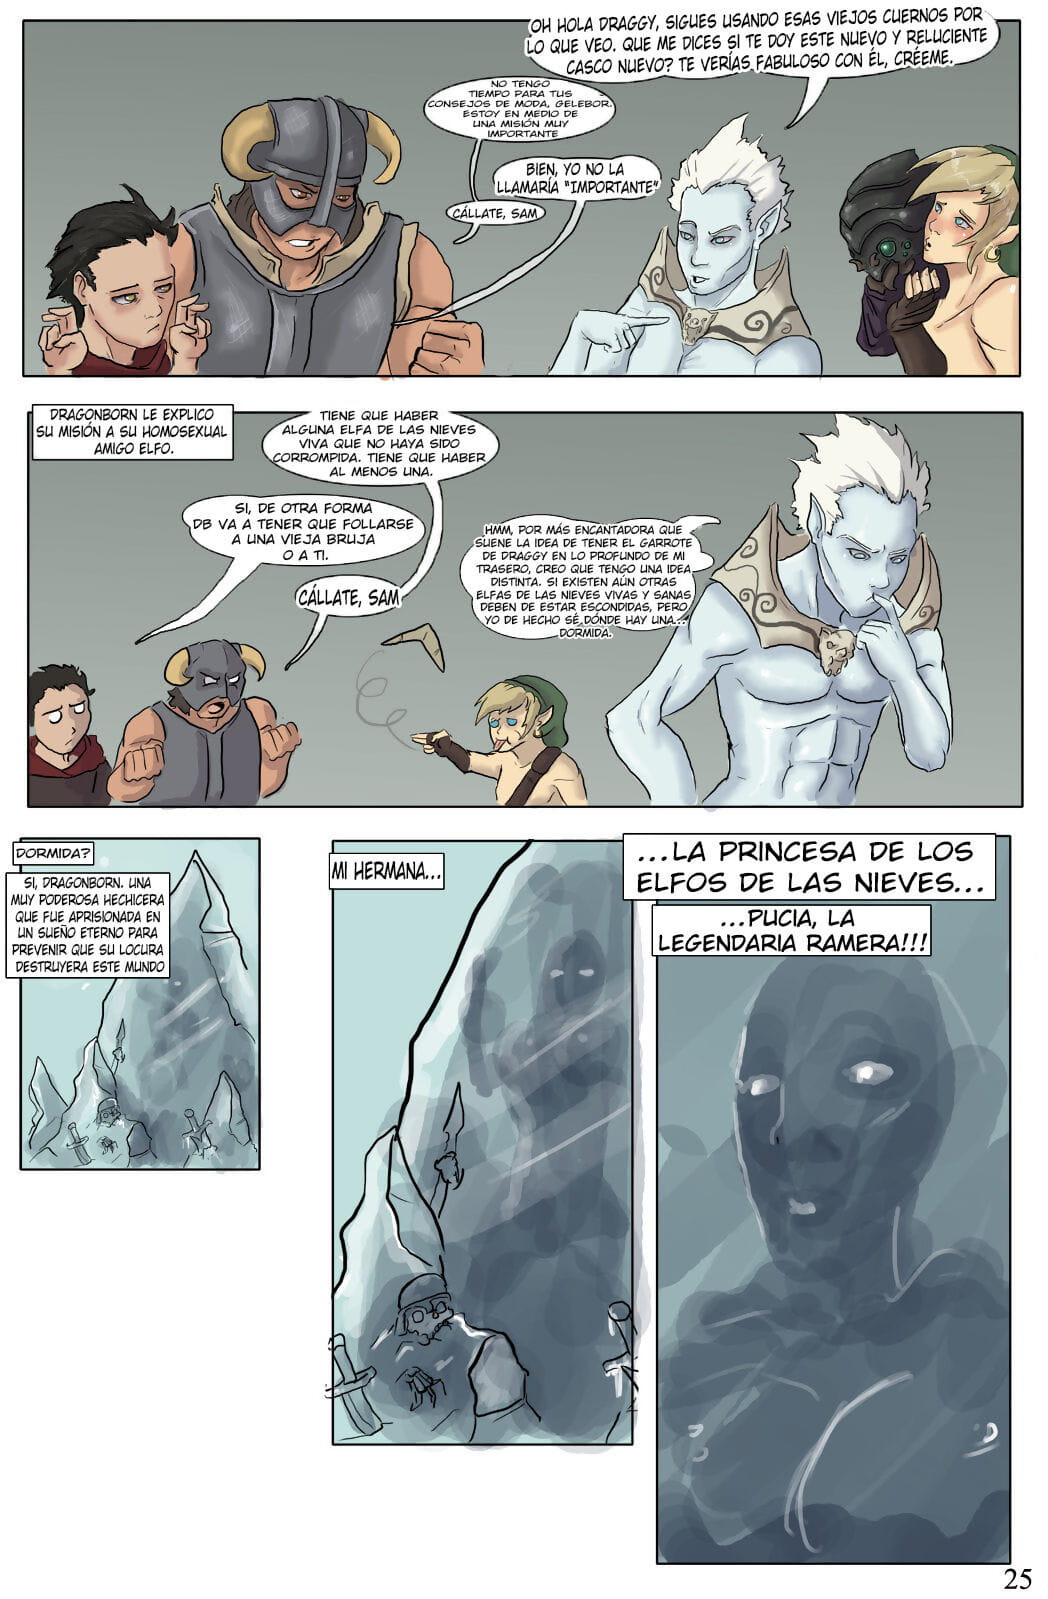 El Devenir de Dragonborn - part 2 page 1